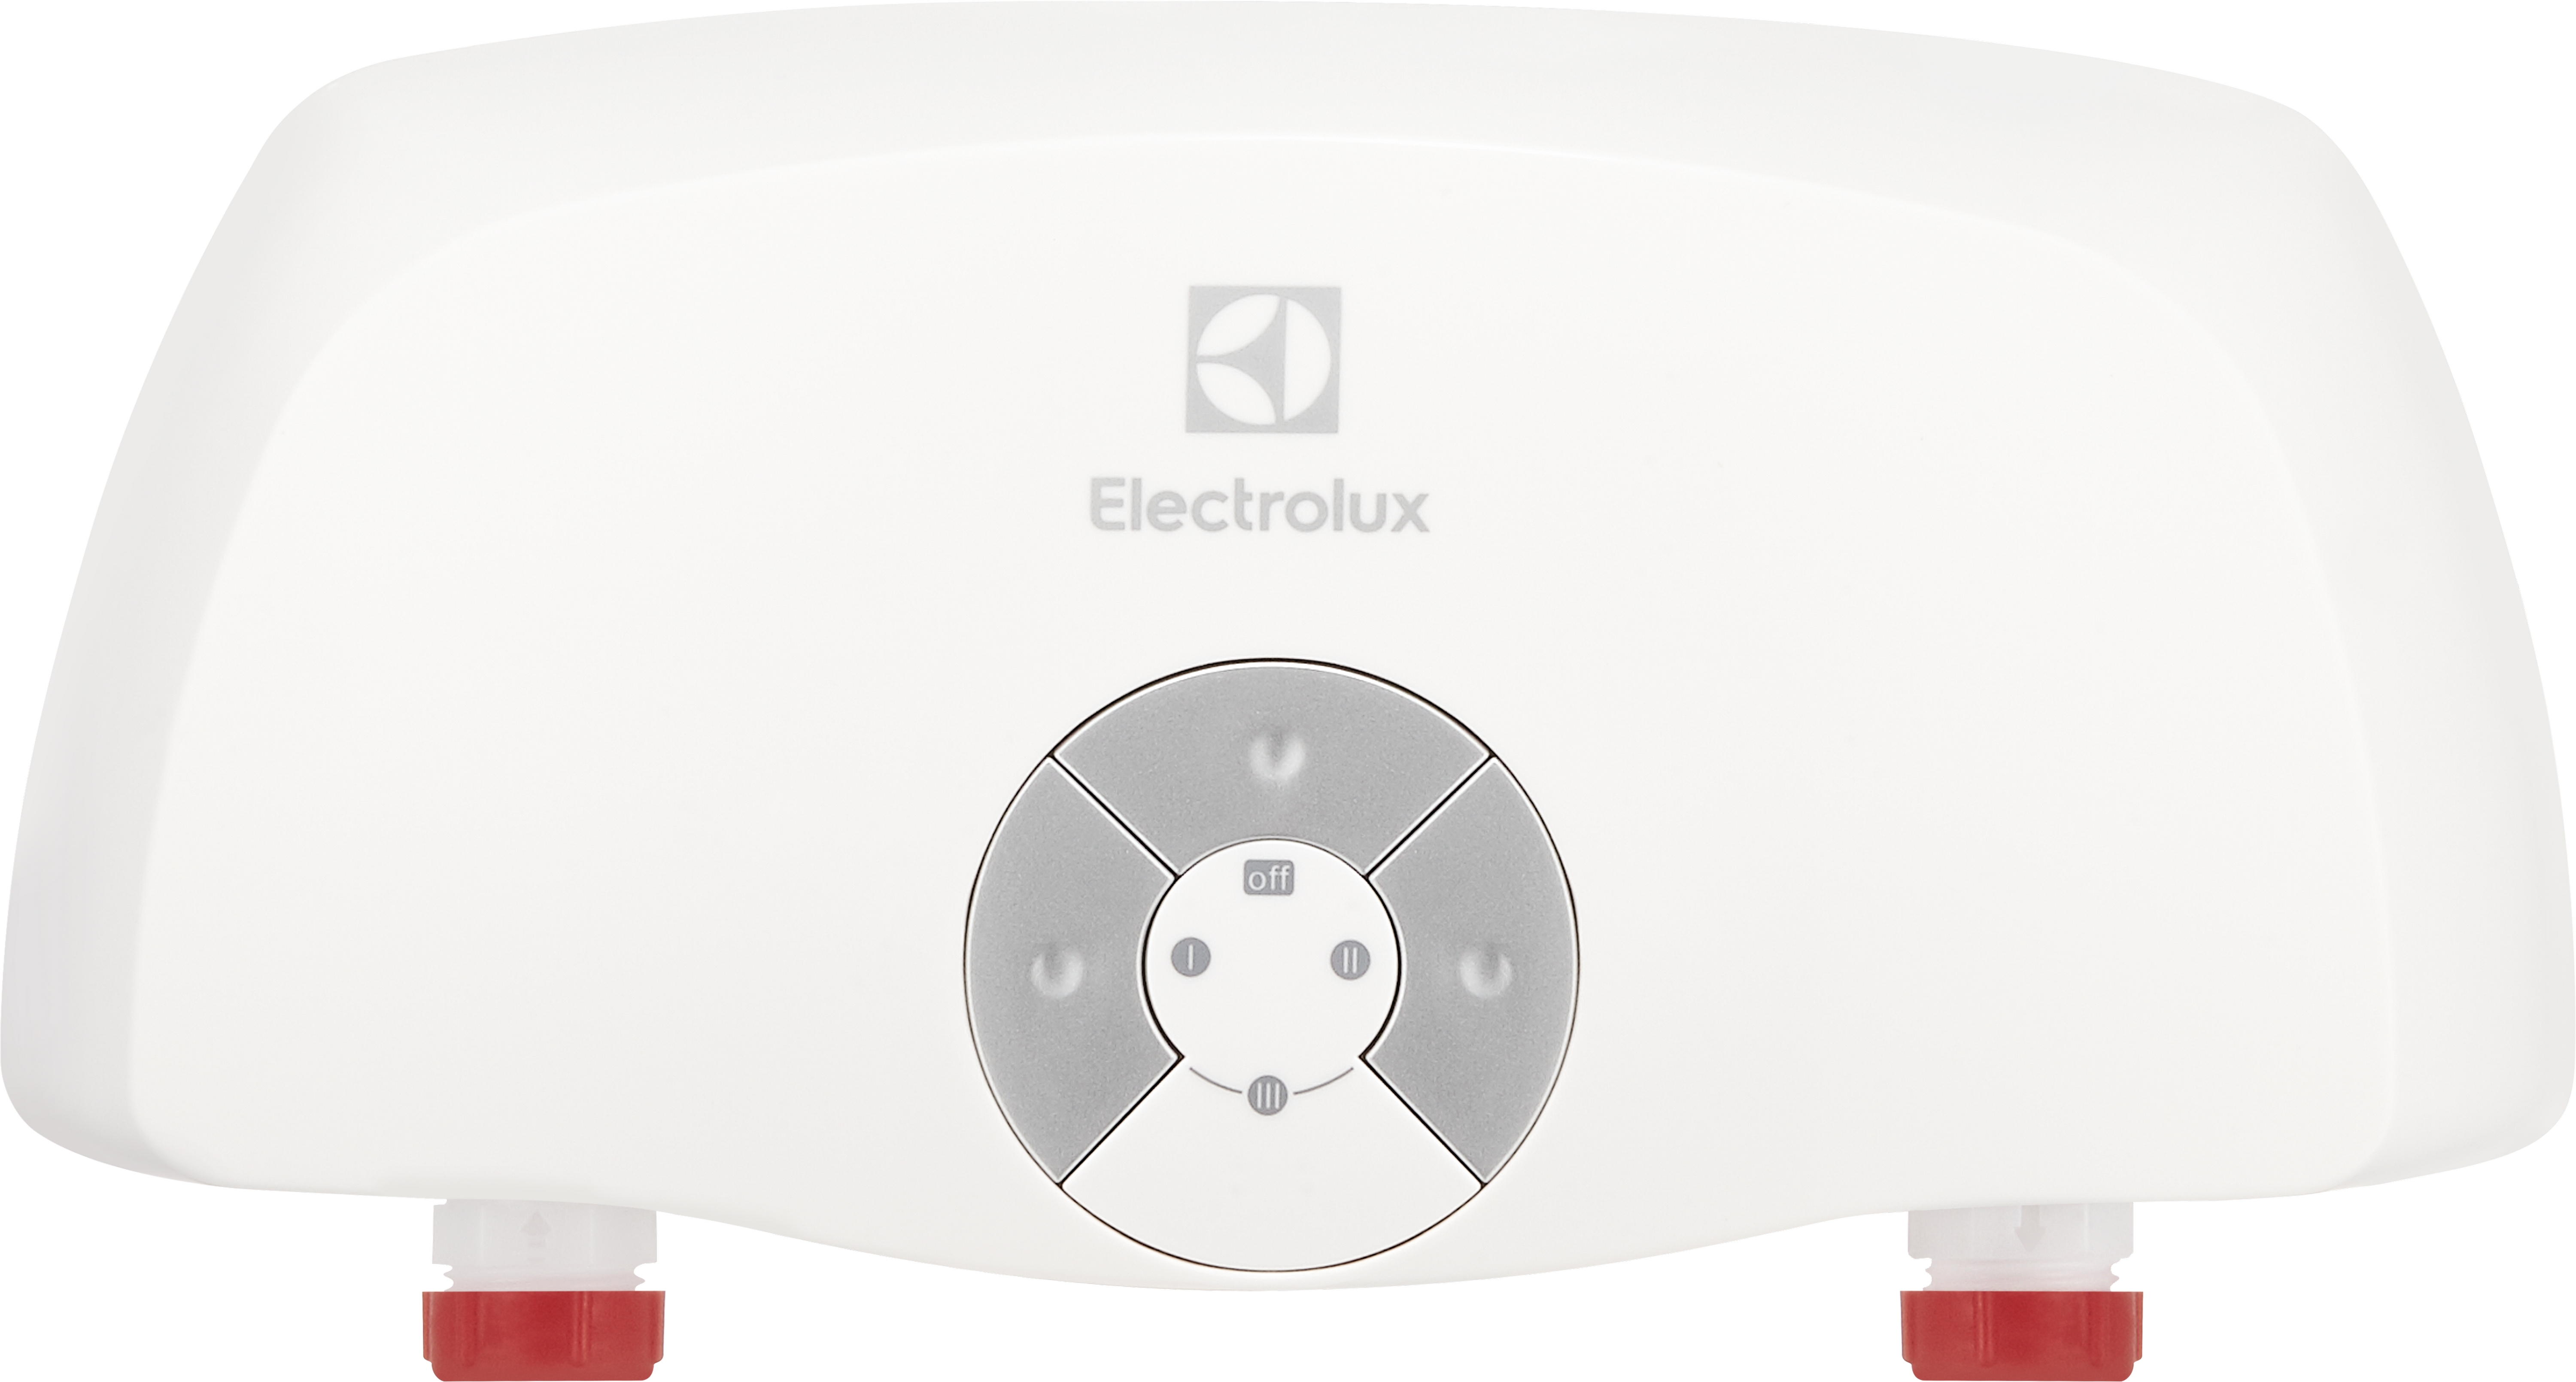 Отзывы кран electrolux водонагреватель Electrolux Smartfix 2.0 3.5 TS в Украине